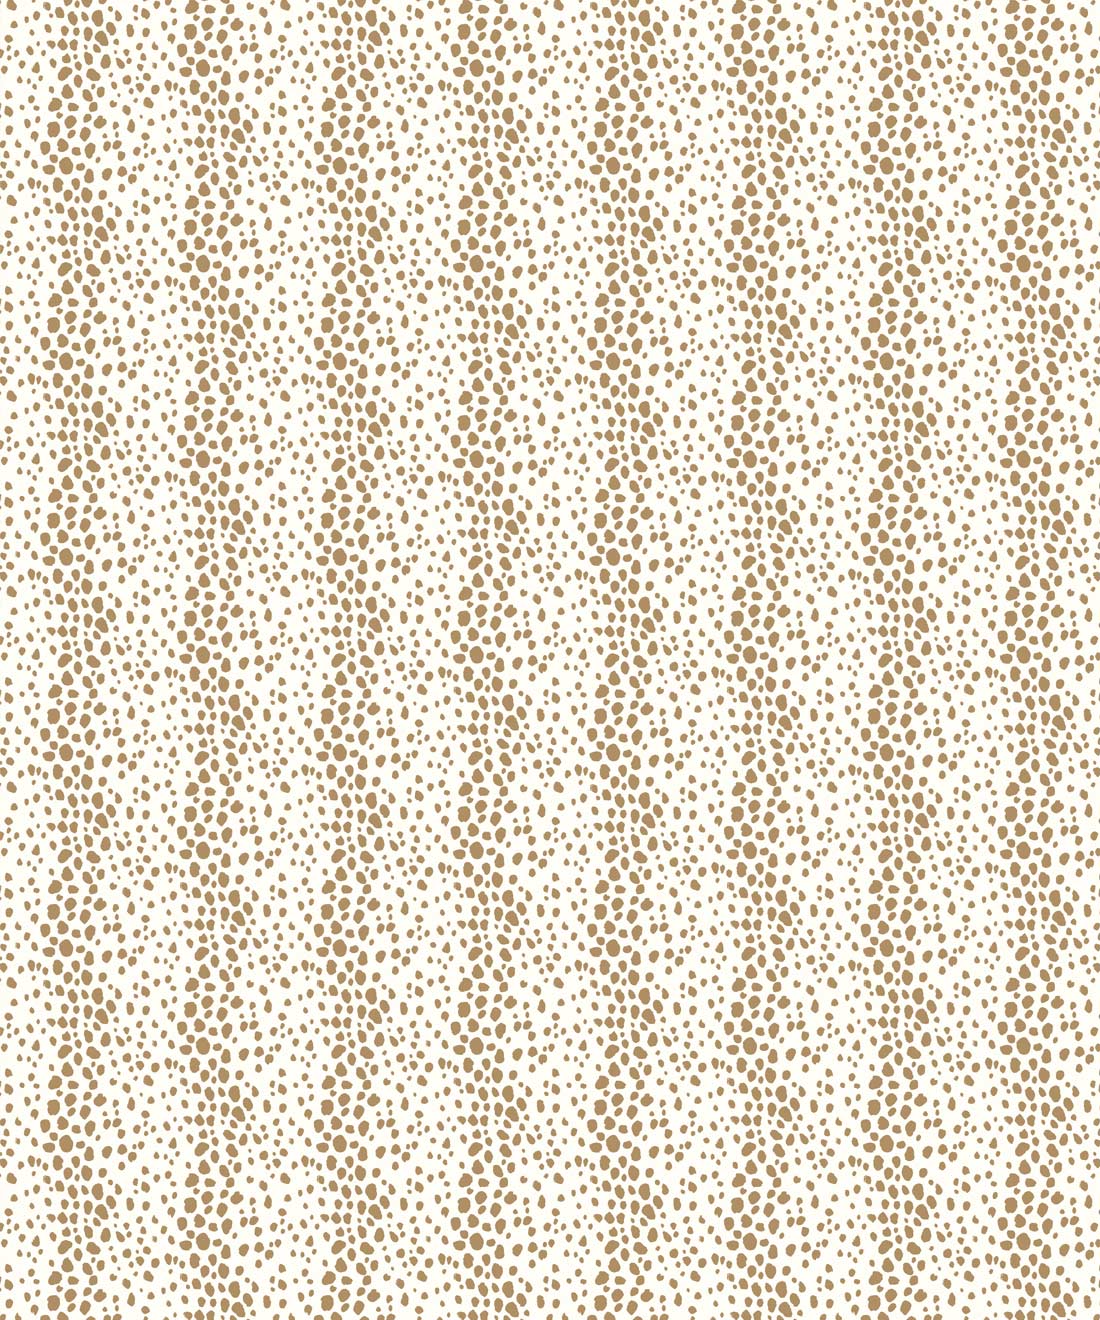 Park Avenue Petite Wallpaper • Dianne Bergeron • Animal Print Wallpaper • Animal Spots Wallpaper • Camel • Swatch